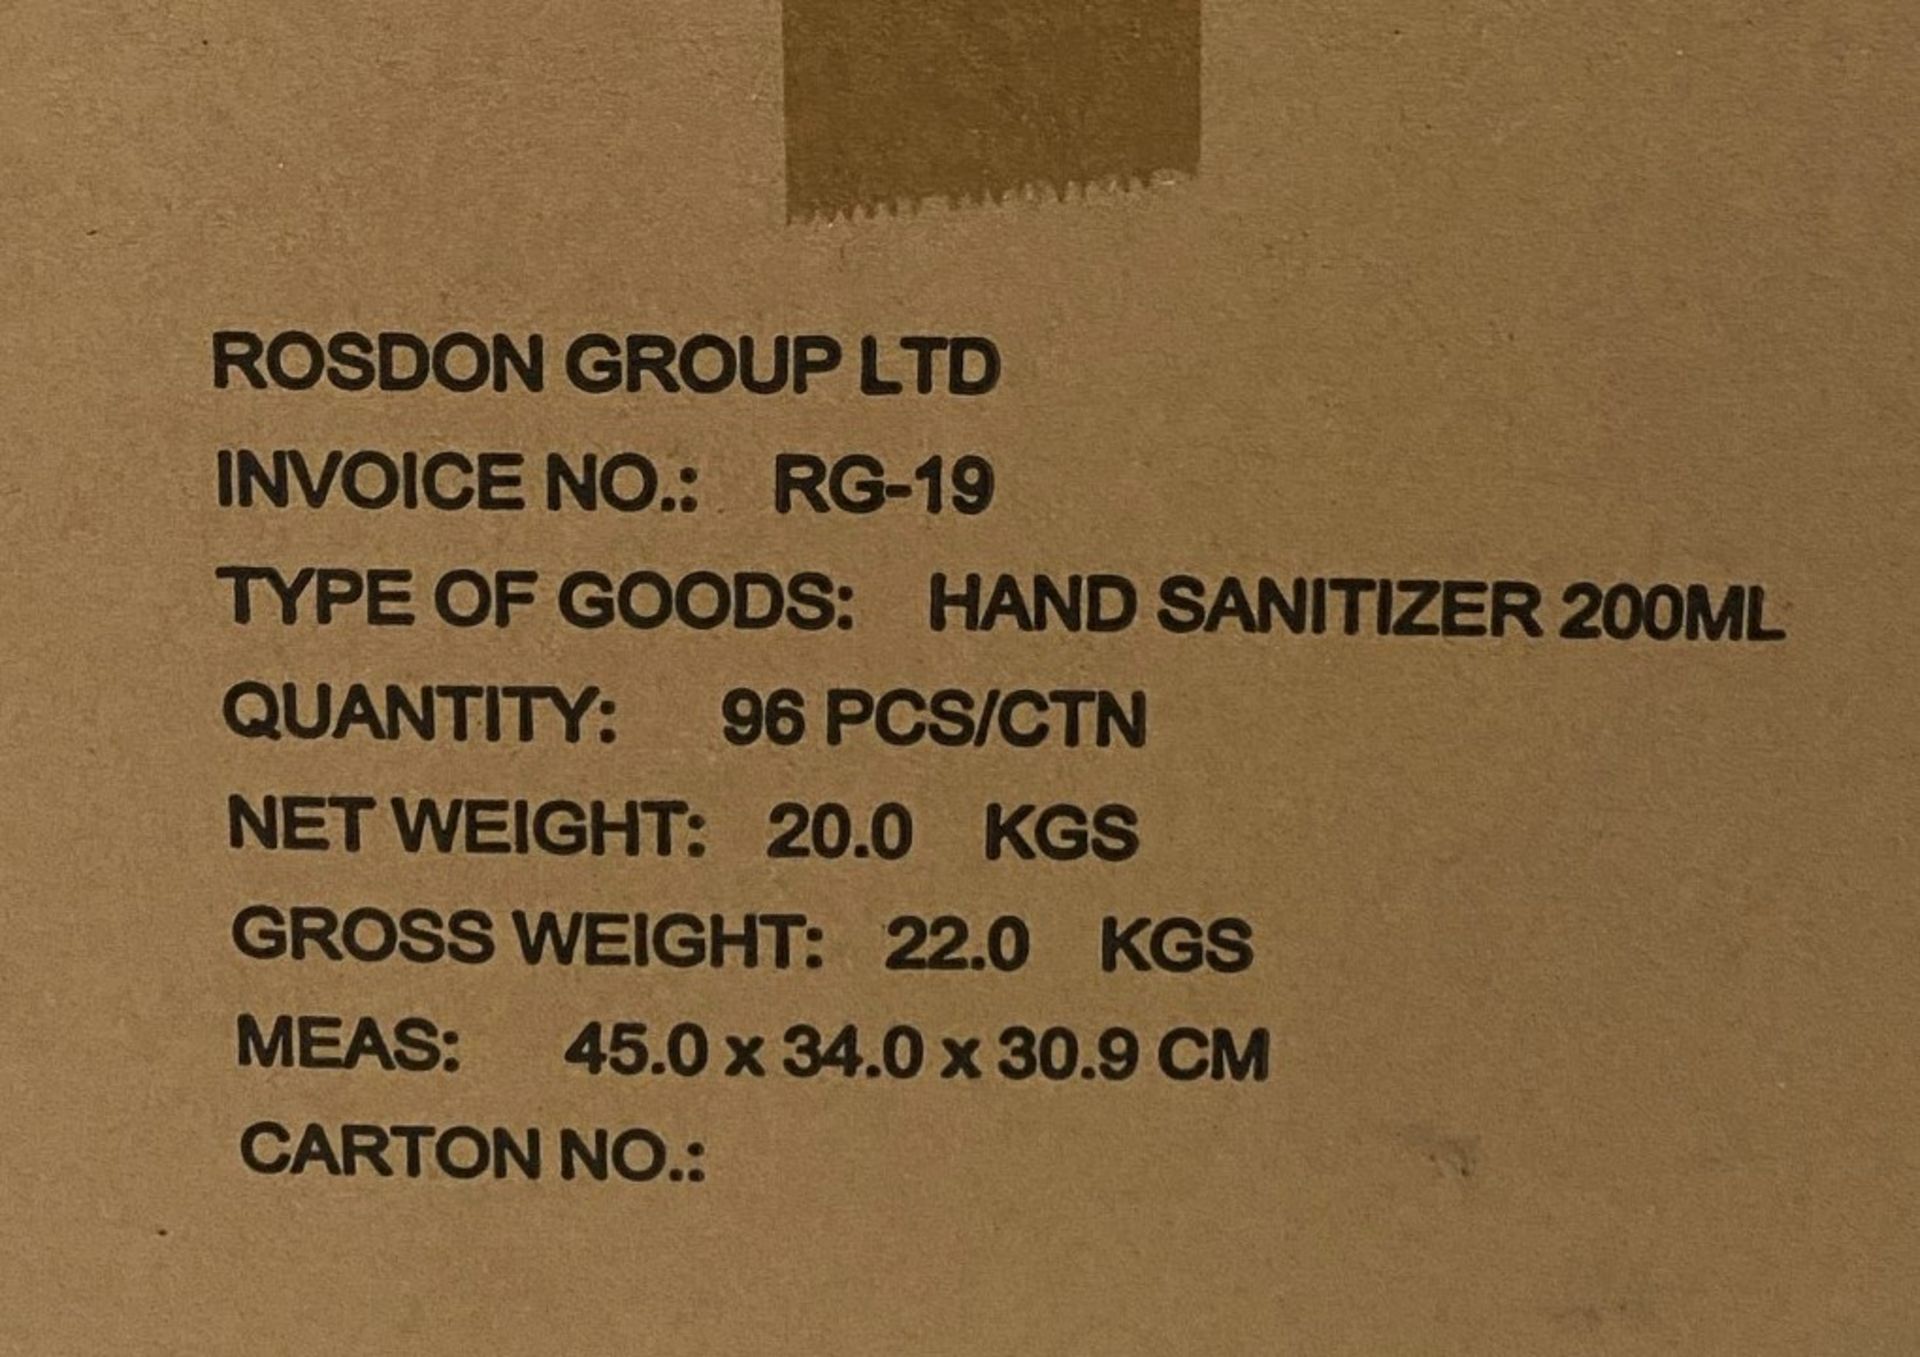 192 x 200ml pump top bottles of Rosdon Group UK hand sanitiser (Unlabelled clear plastic bottles) - - Image 3 of 3